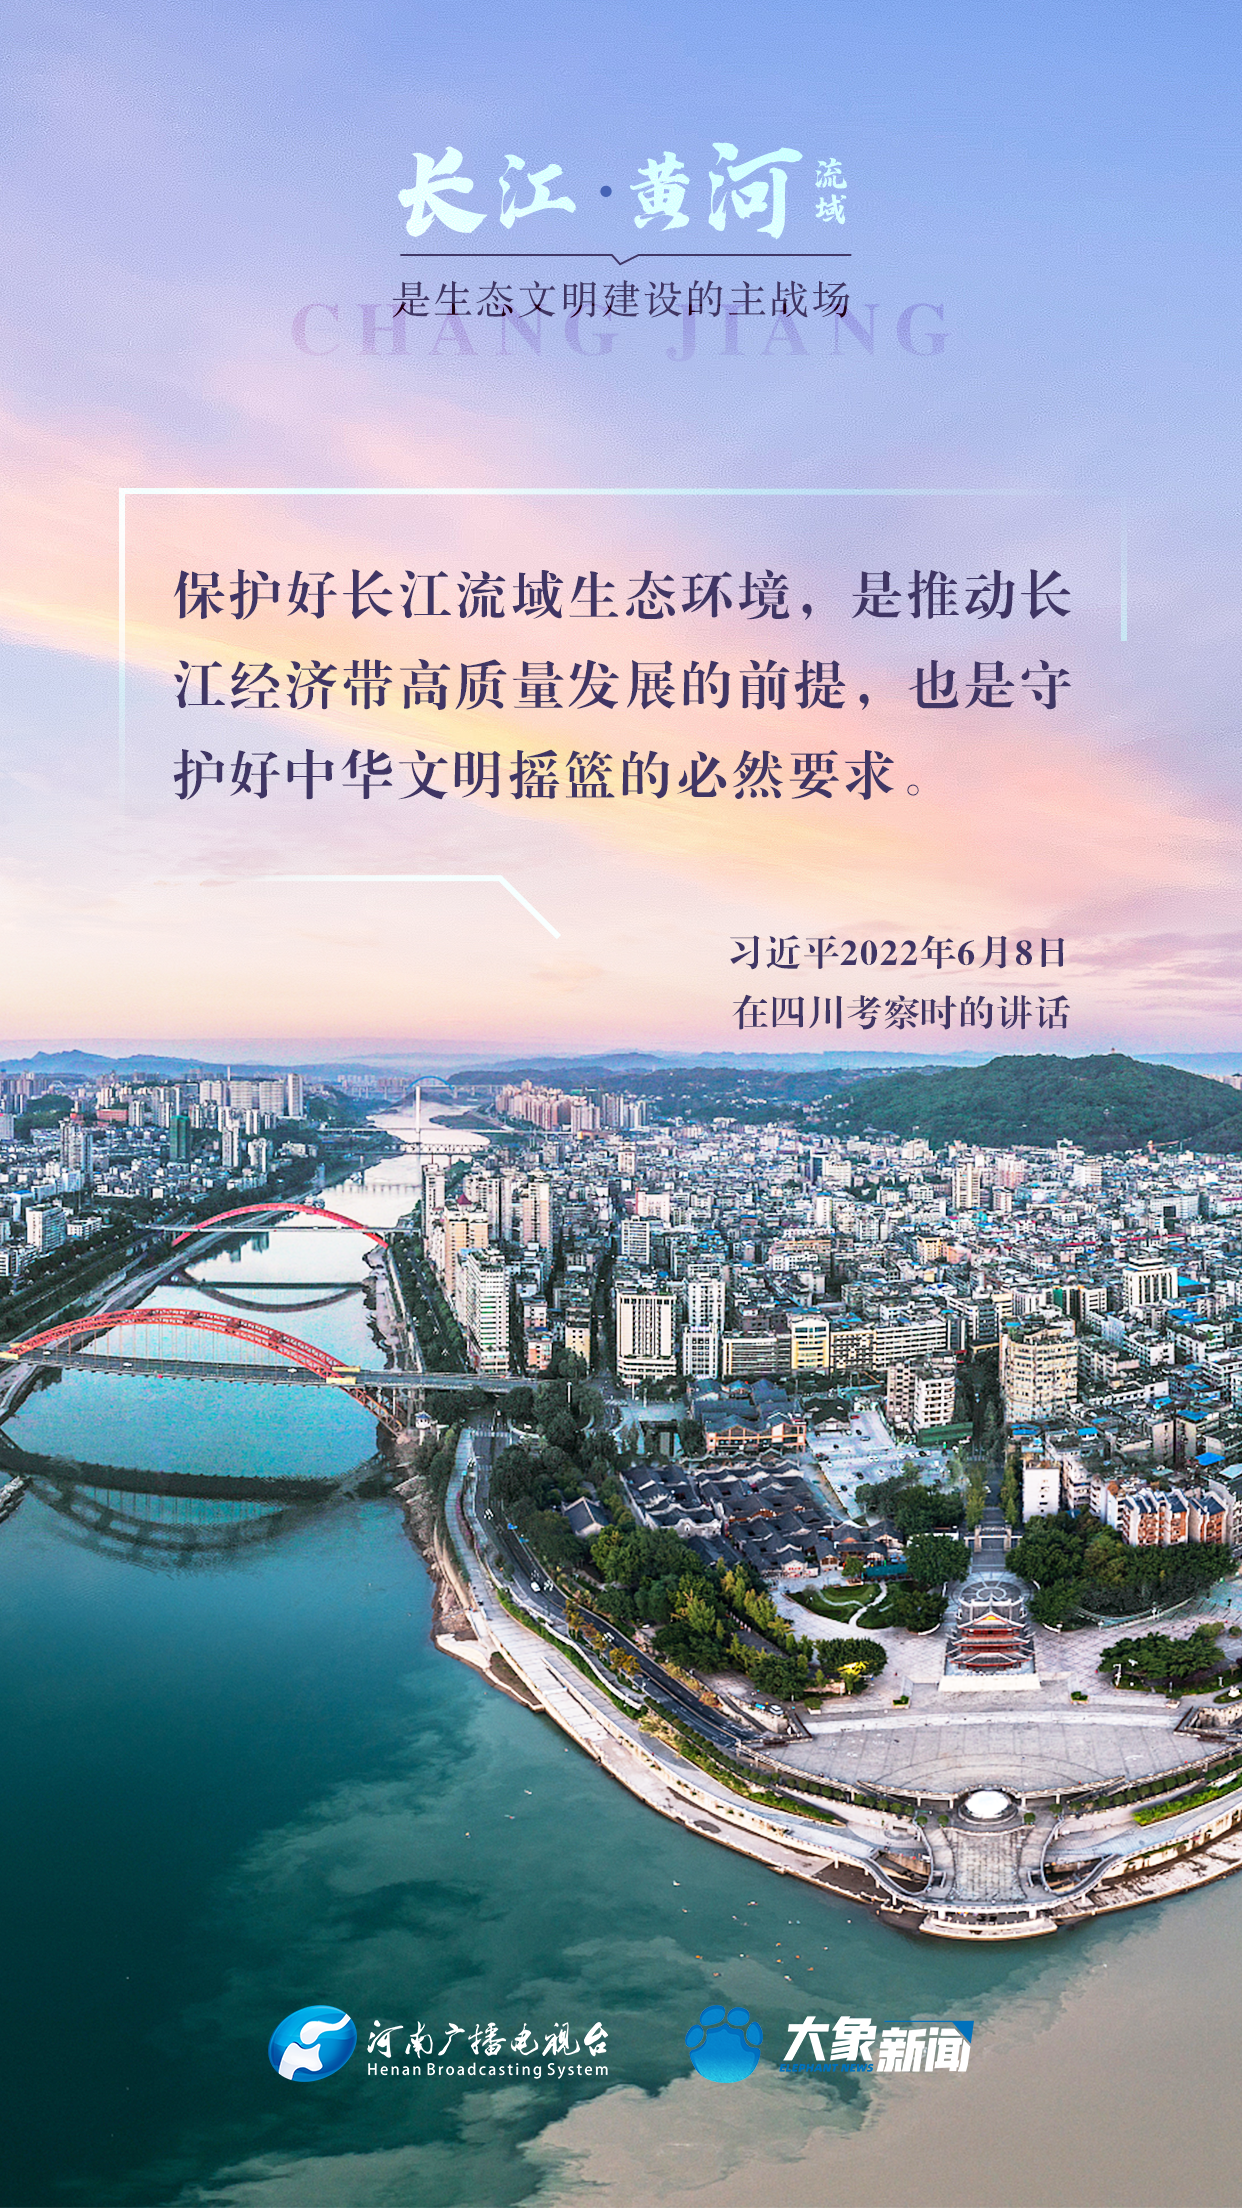 和谐共生 | 长江、黄河流域是生态文明建设的主战场